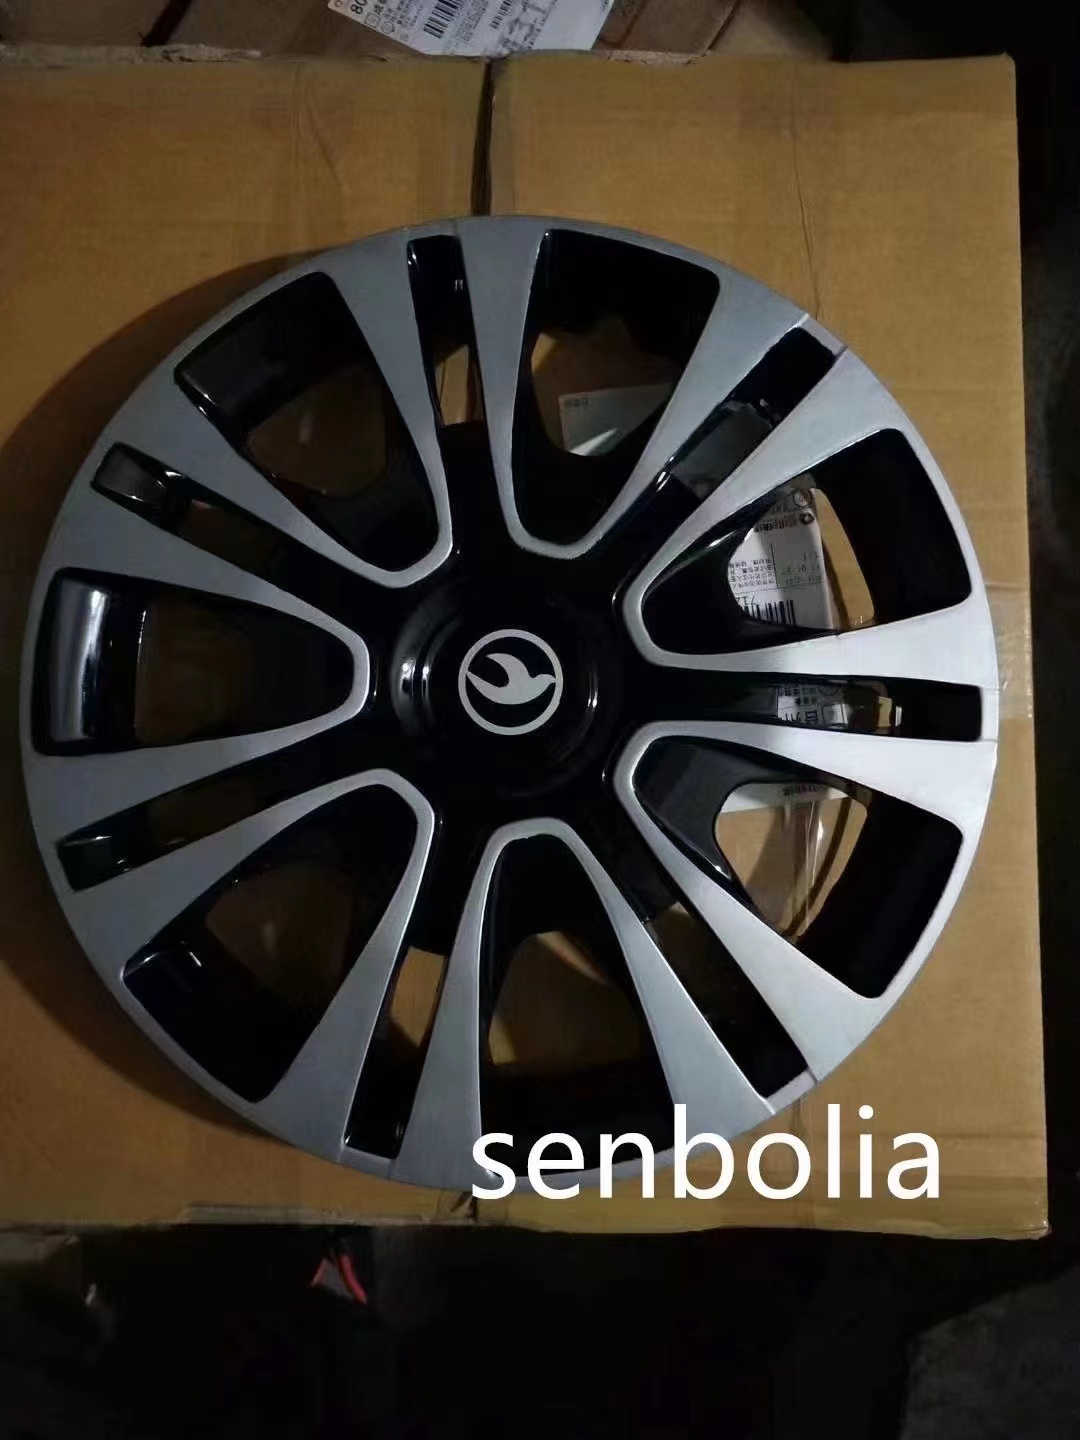 senbolia-LGG-3汽车轮毂盖尺码多颜色款多  厂家直销欢迎前来采购汽车用品图